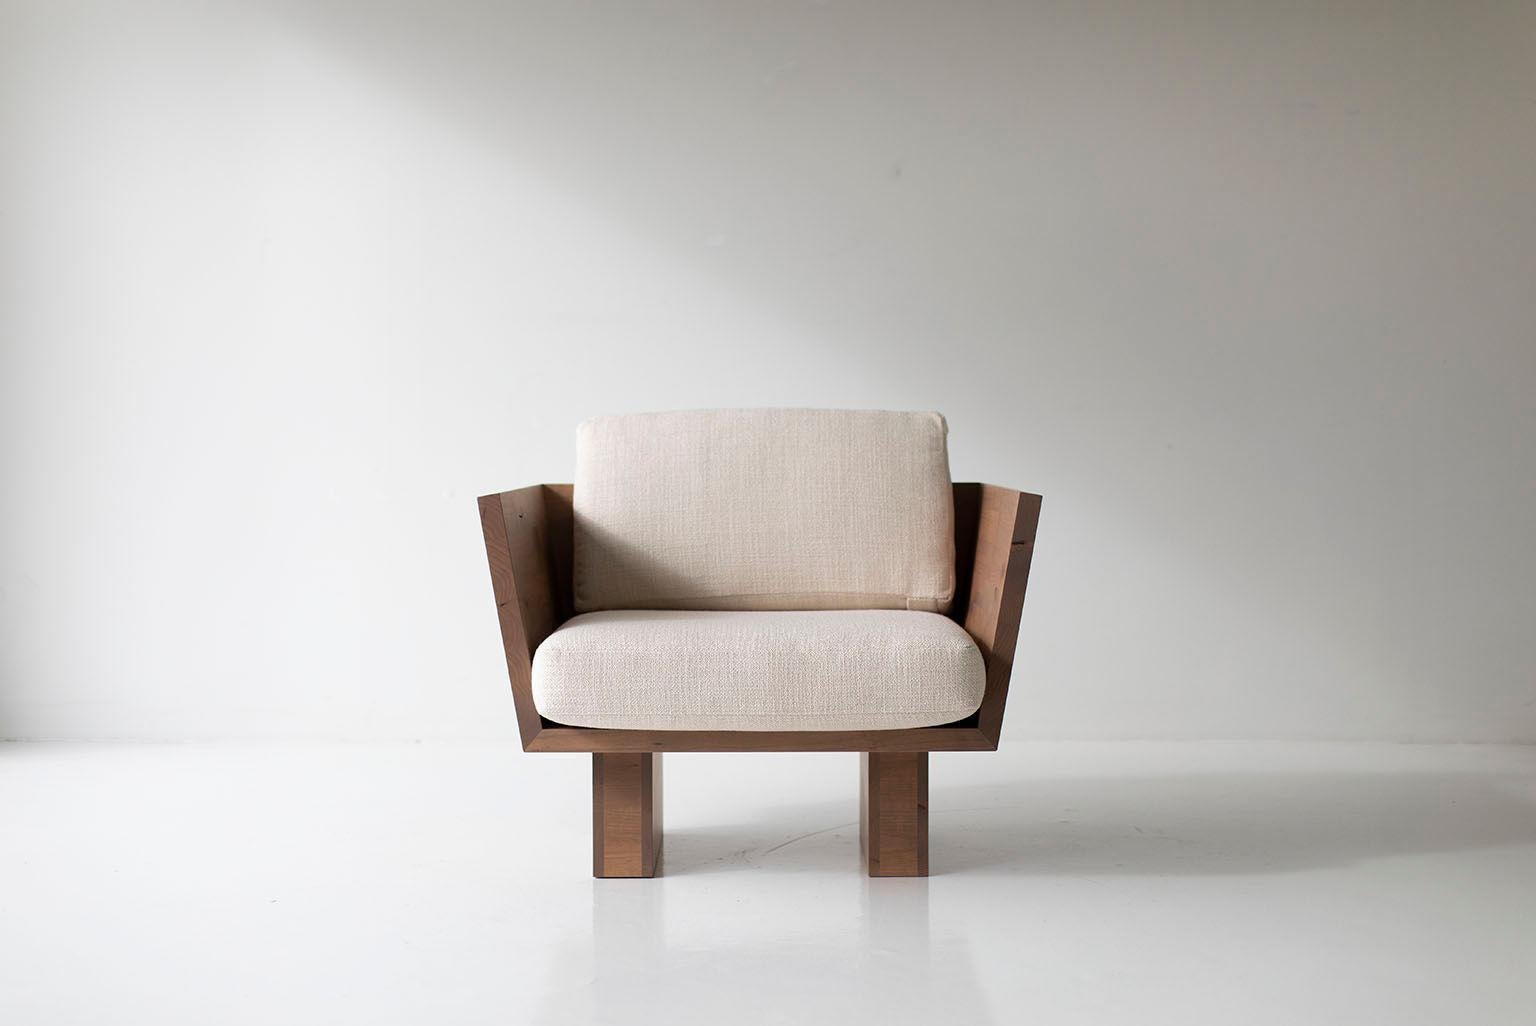 Cette chaise longue Suelo Modern est magnifiquement construite en bois massif dans l'Ohio, aux États-Unis. Cette silhouette est simple, moderne et élégante, avec des coussins de siège et de dossier confortables. C'est la chaise parfaite pour tout